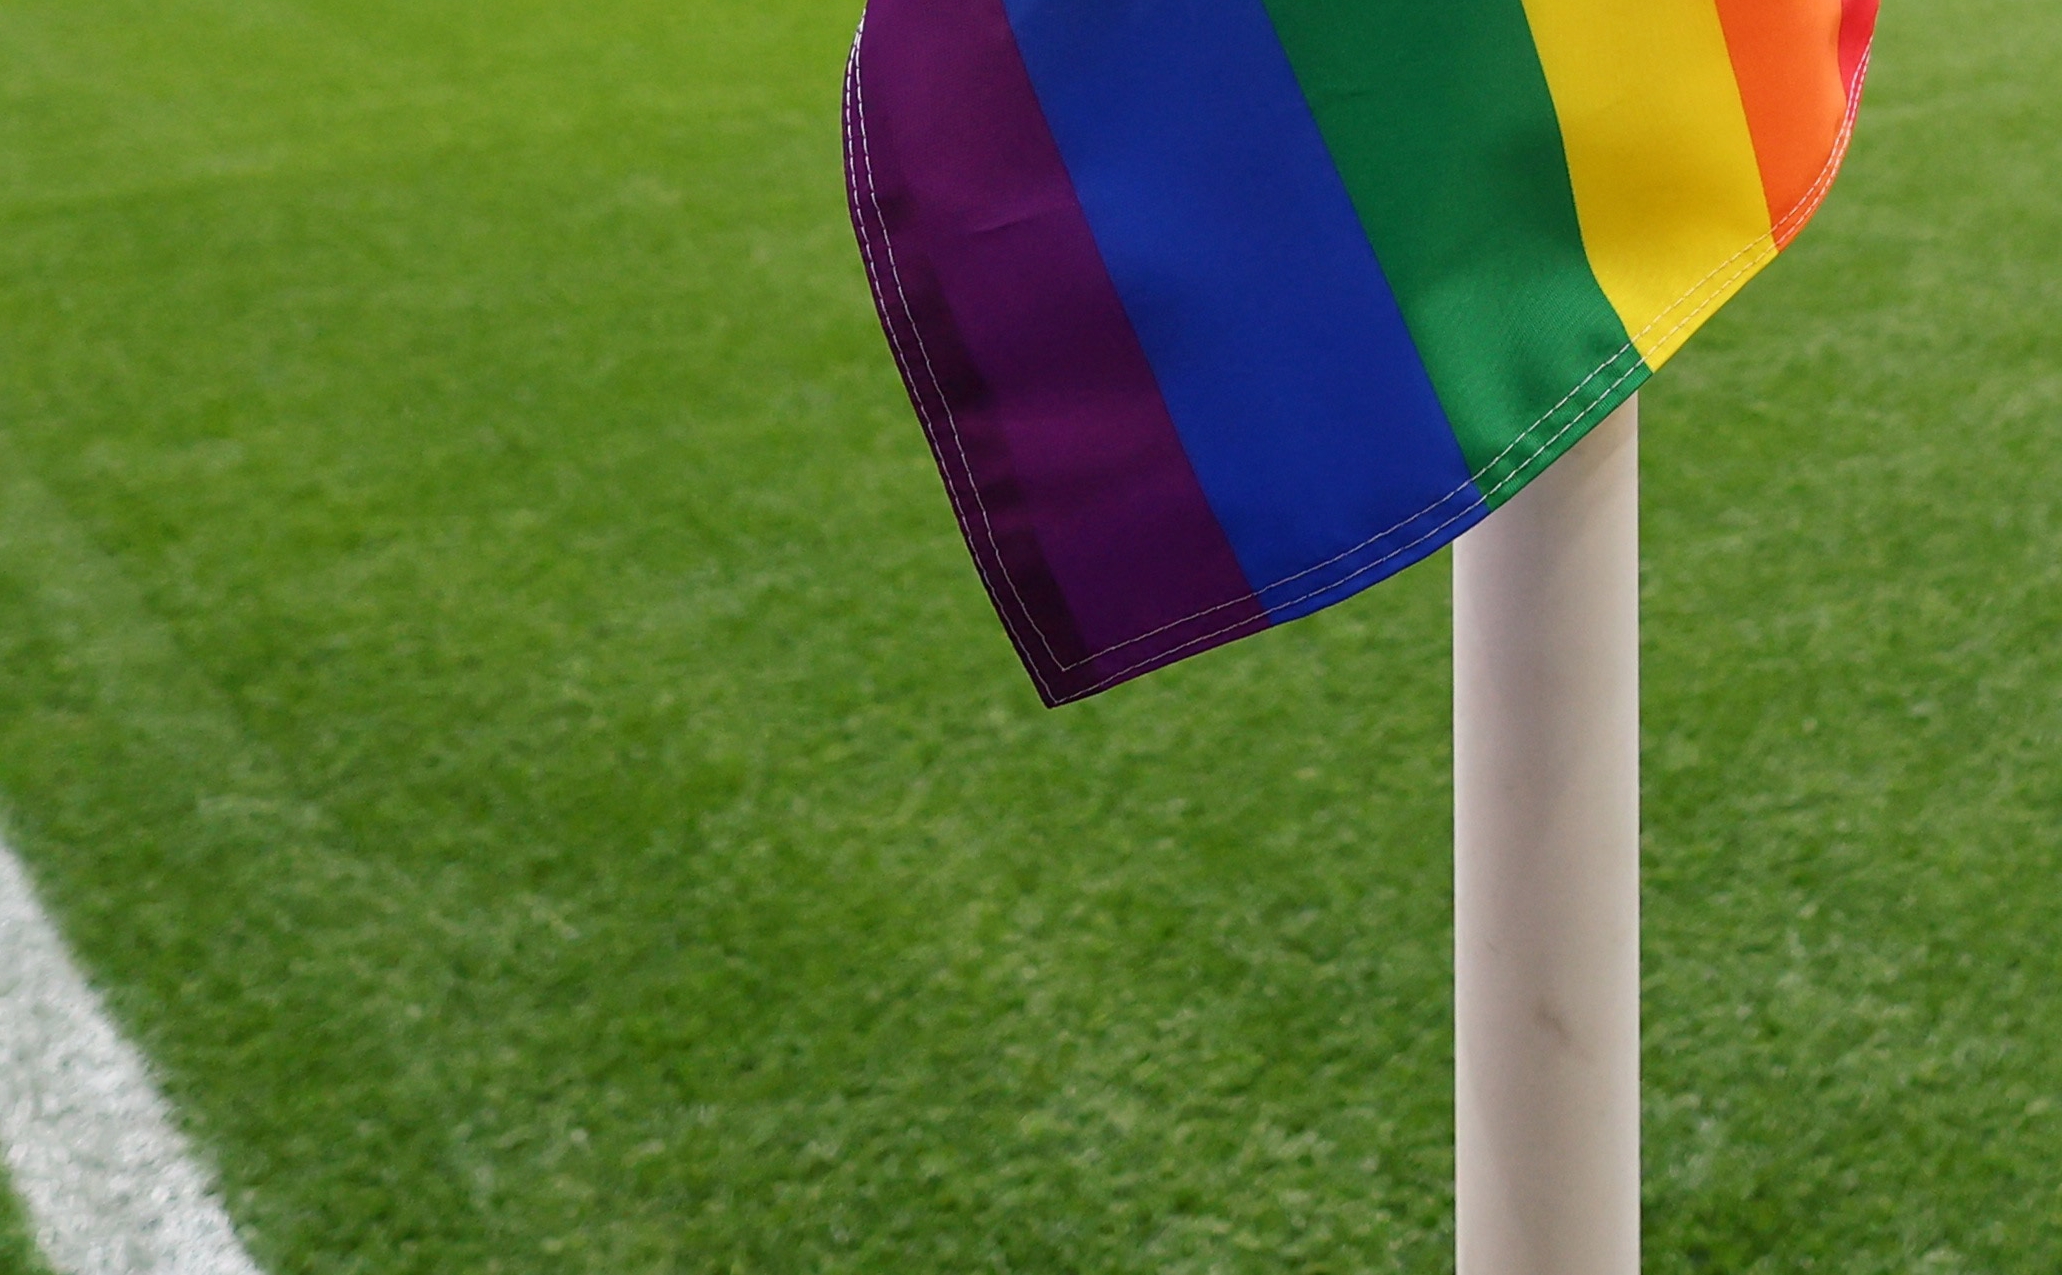 Μουντιάλ 2022: Συνέλαβαν και κακοποίησαν μέλη της ΛΟΑΤΚΙ+ κοινότητας στο Κατάρ